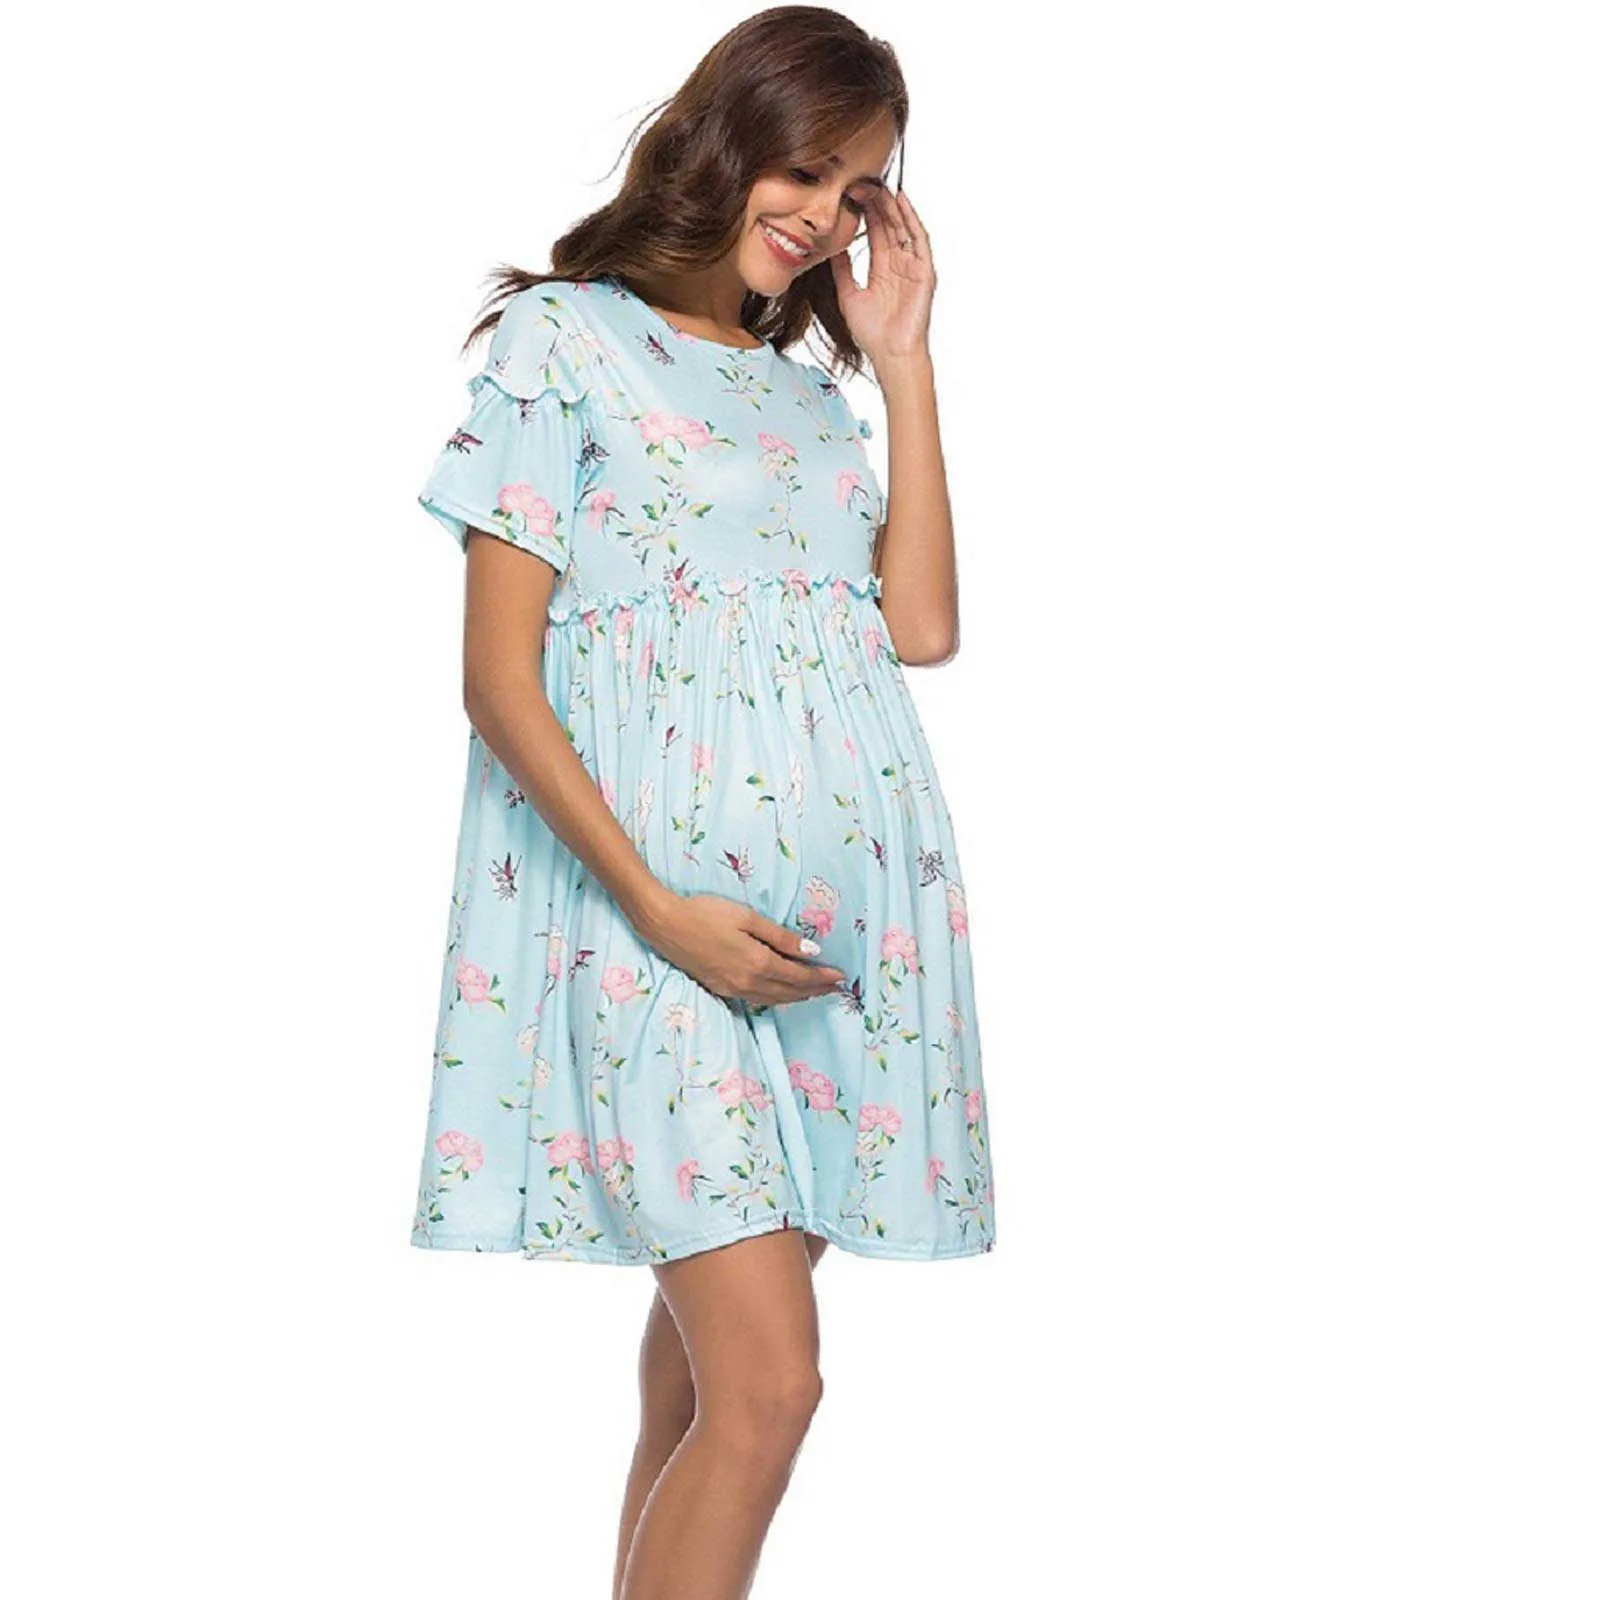 Robes enceintes Femmes Casual Femmes Vêtements Trompette À Manches Courtes Fleurs Maternité Réservoir Mini Robe Robes Mujer Verano 2021 Q0713